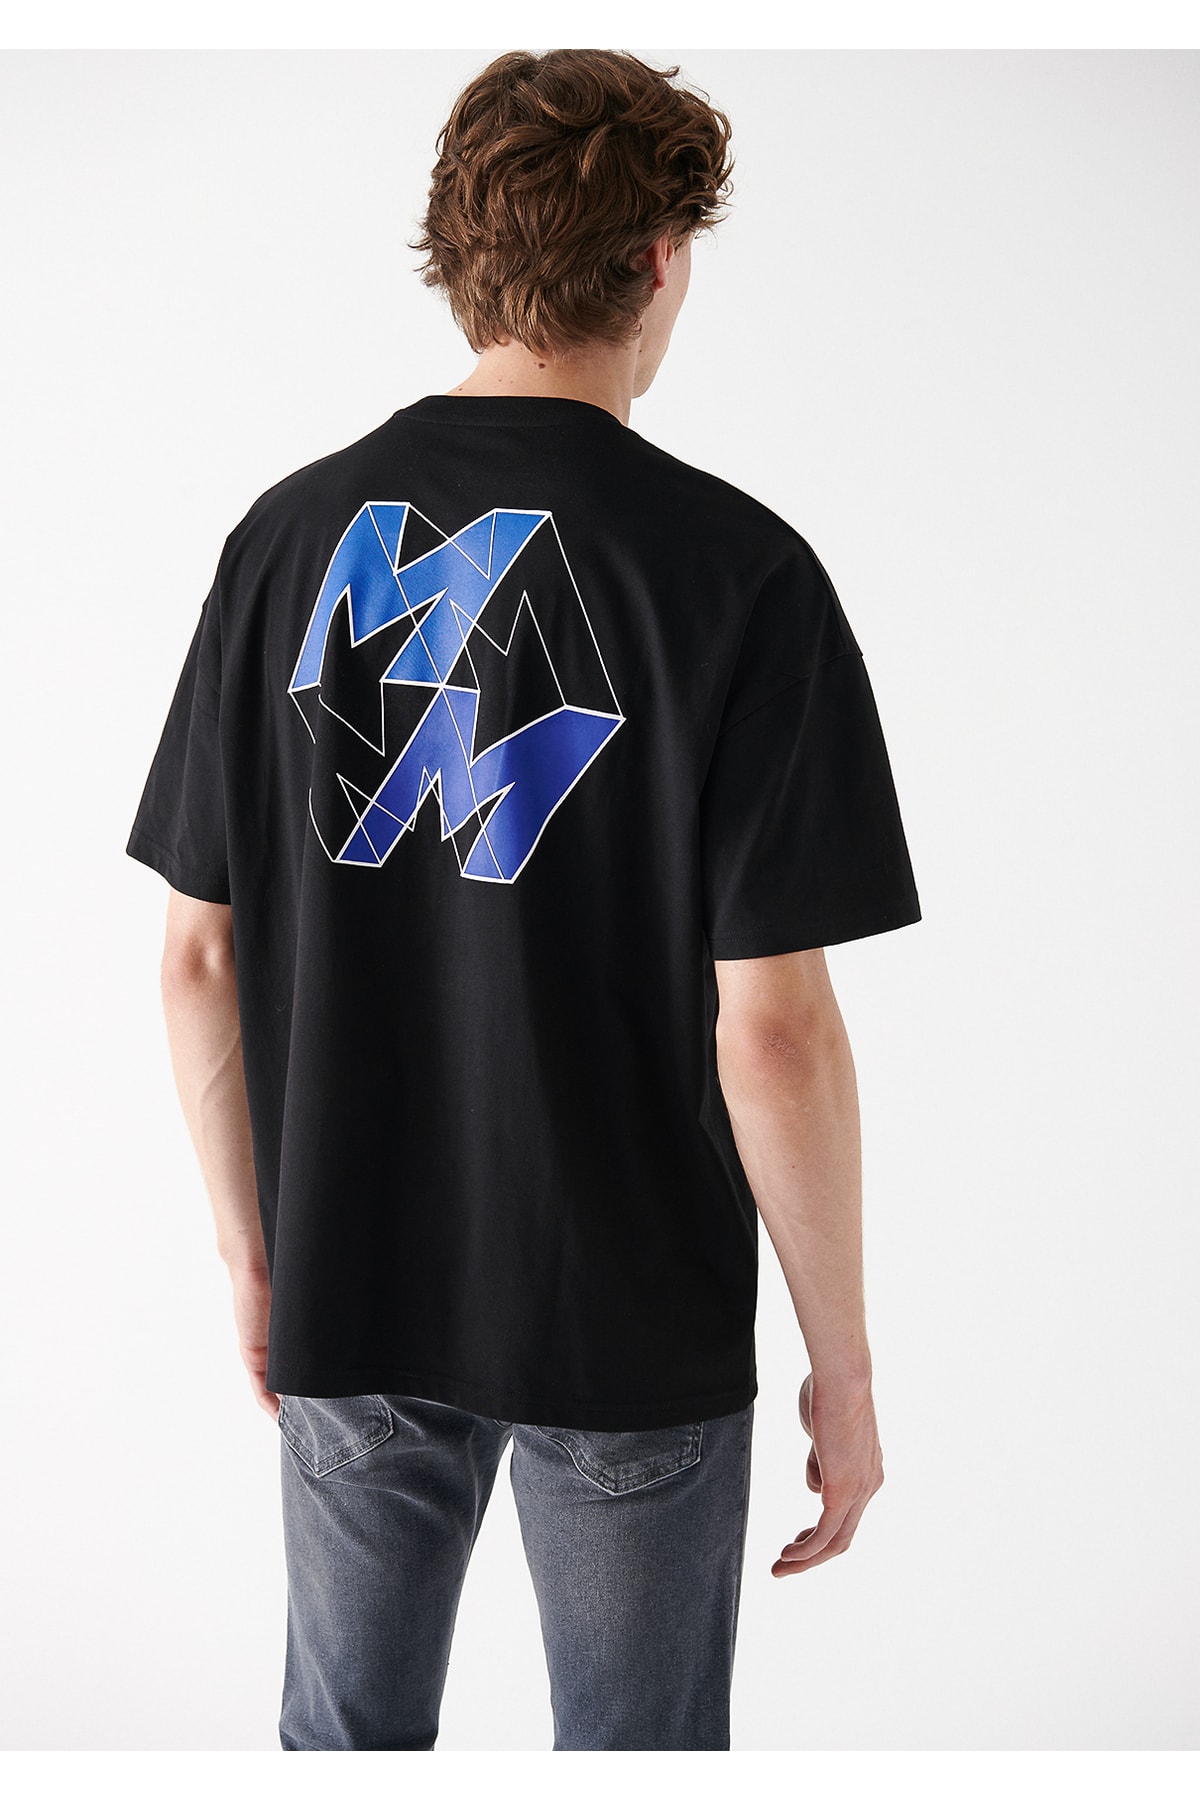 Mavi M Logo Baskılı Siyah Tişört Oversize / Geniş Kesim 0611066-900